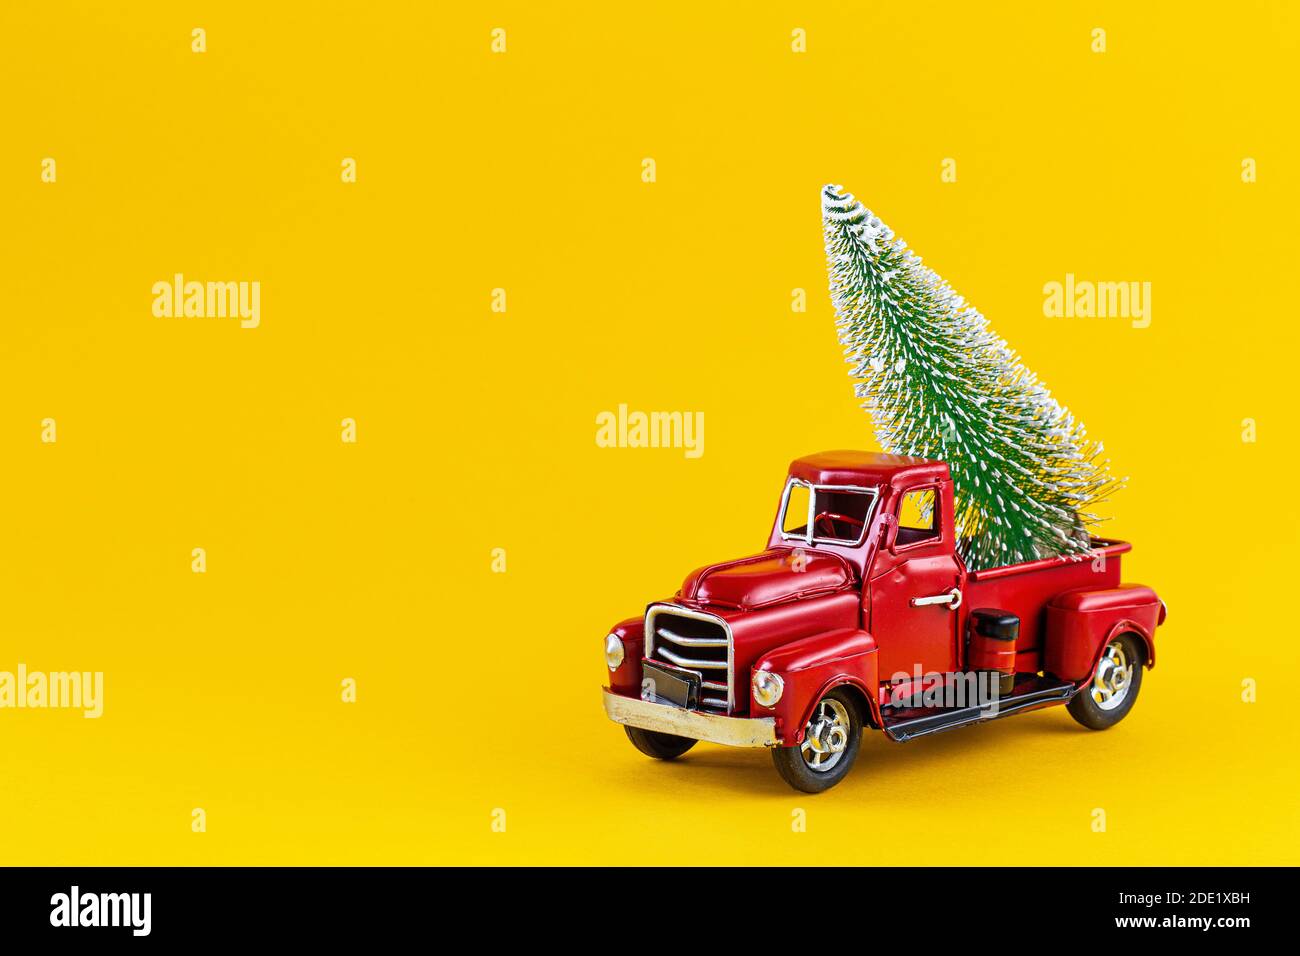 Camion giocattolo rosso retrò con albero di Natale sul corpo del camion su sfondo giallo. Consegna, natale, Capodanno. Modello giocattolo vintage con Christma Foto Stock